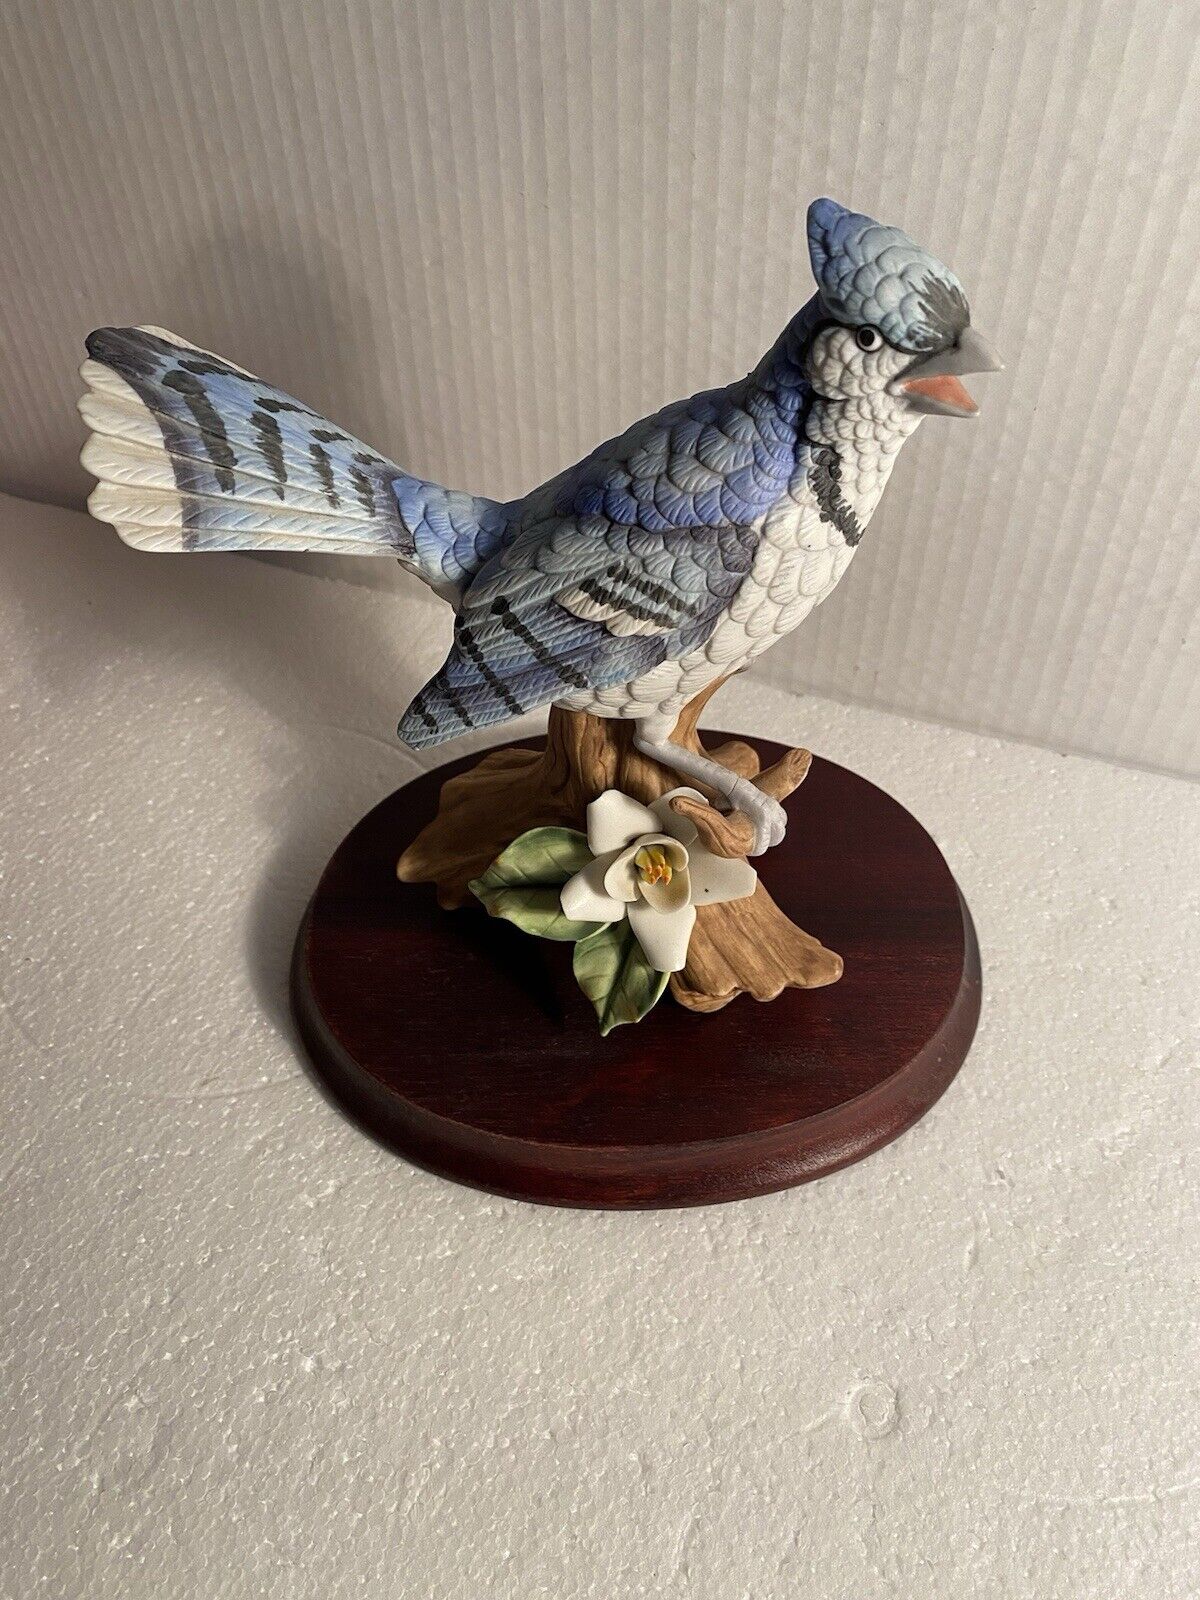 Blue Jay Figurine